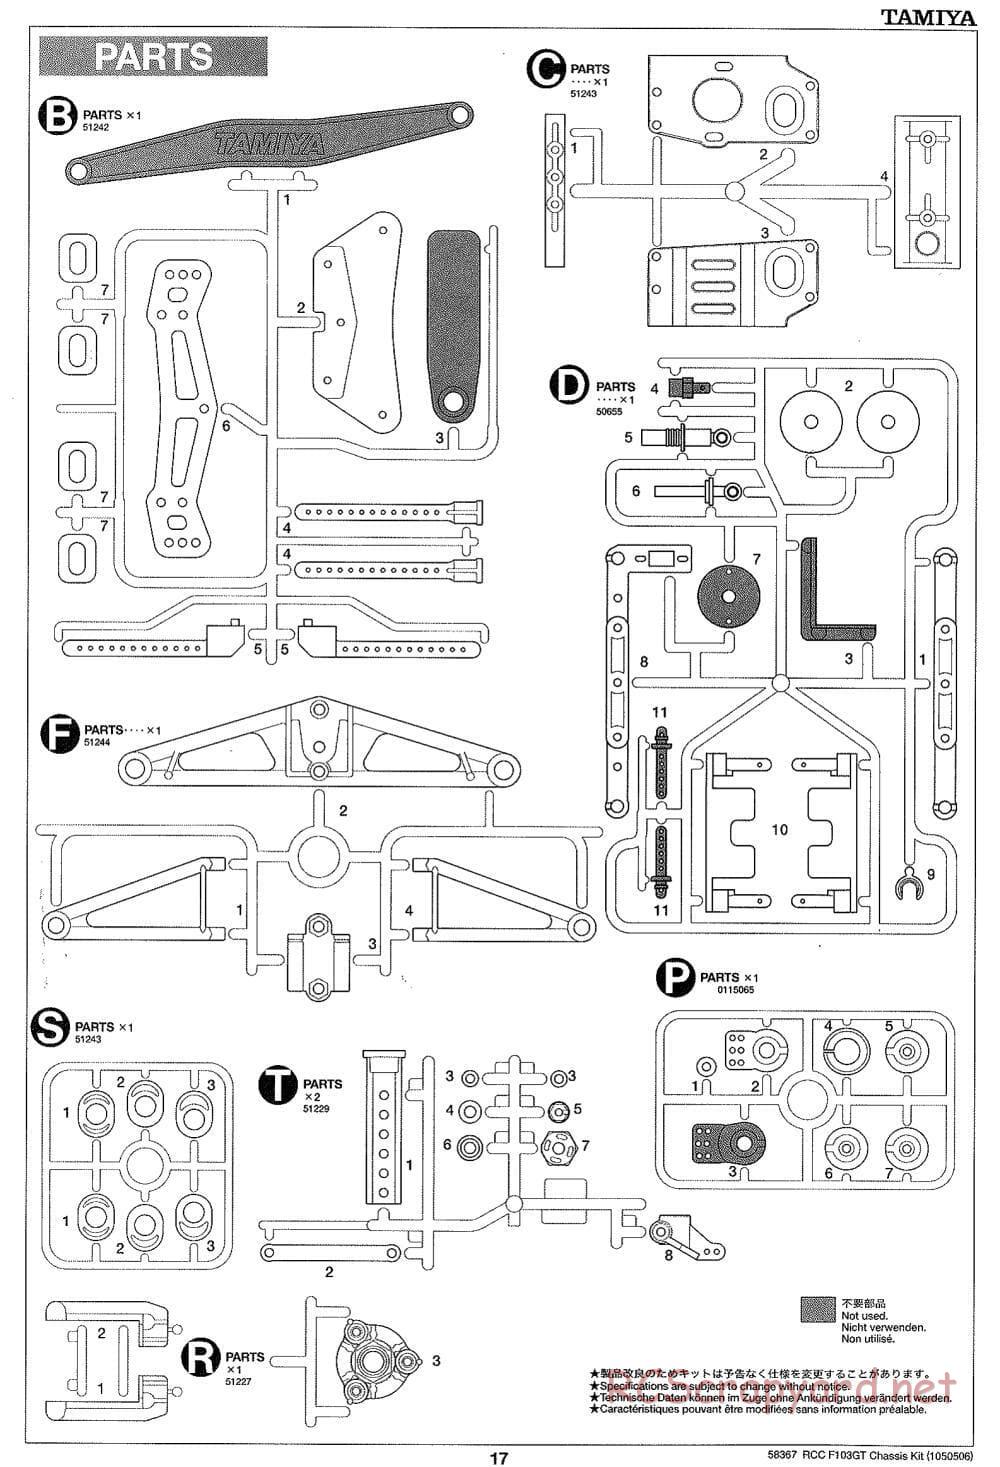 Tamiya - F103GT Chassis Kit - Manual - Page 17